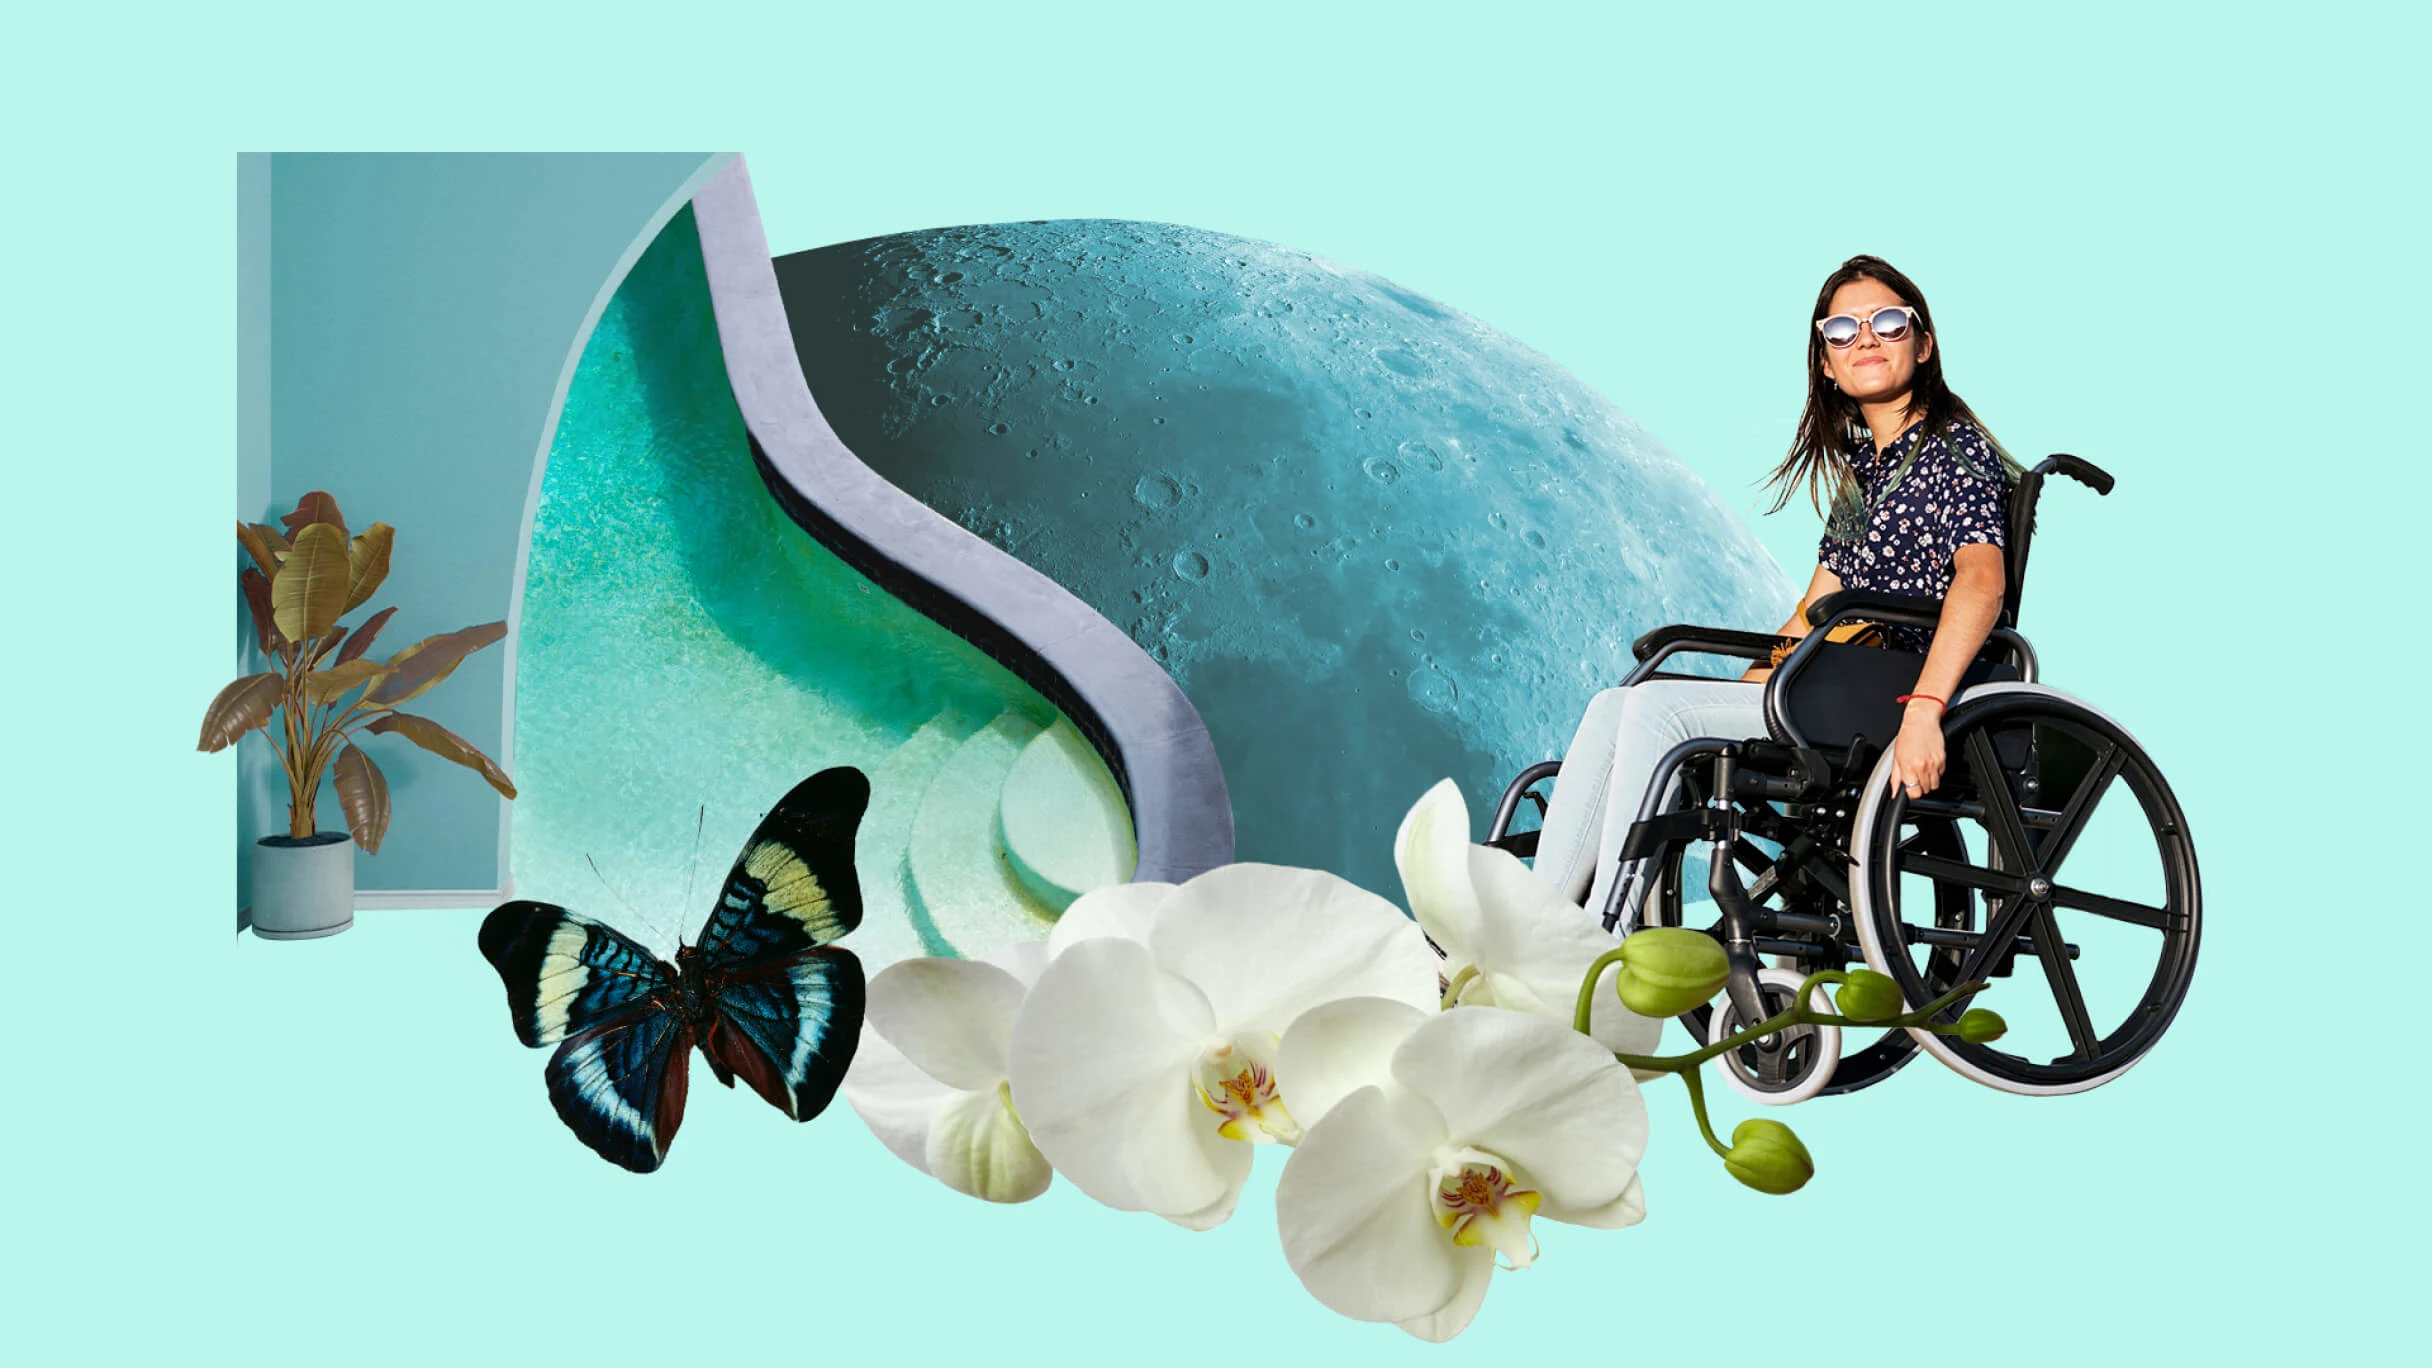 Biała kobieta w okularach przeciwsłonecznych siedzi na wózku inwalidzkim. Powierzchnia księżyca w jasnoniebieskim odcieniu. Czarno-niebieski motyl fruwa obok kilku białych orchidei. Zielona roślina stoi wysoko w rogu pokoju obok zakrzywionego basenu. 